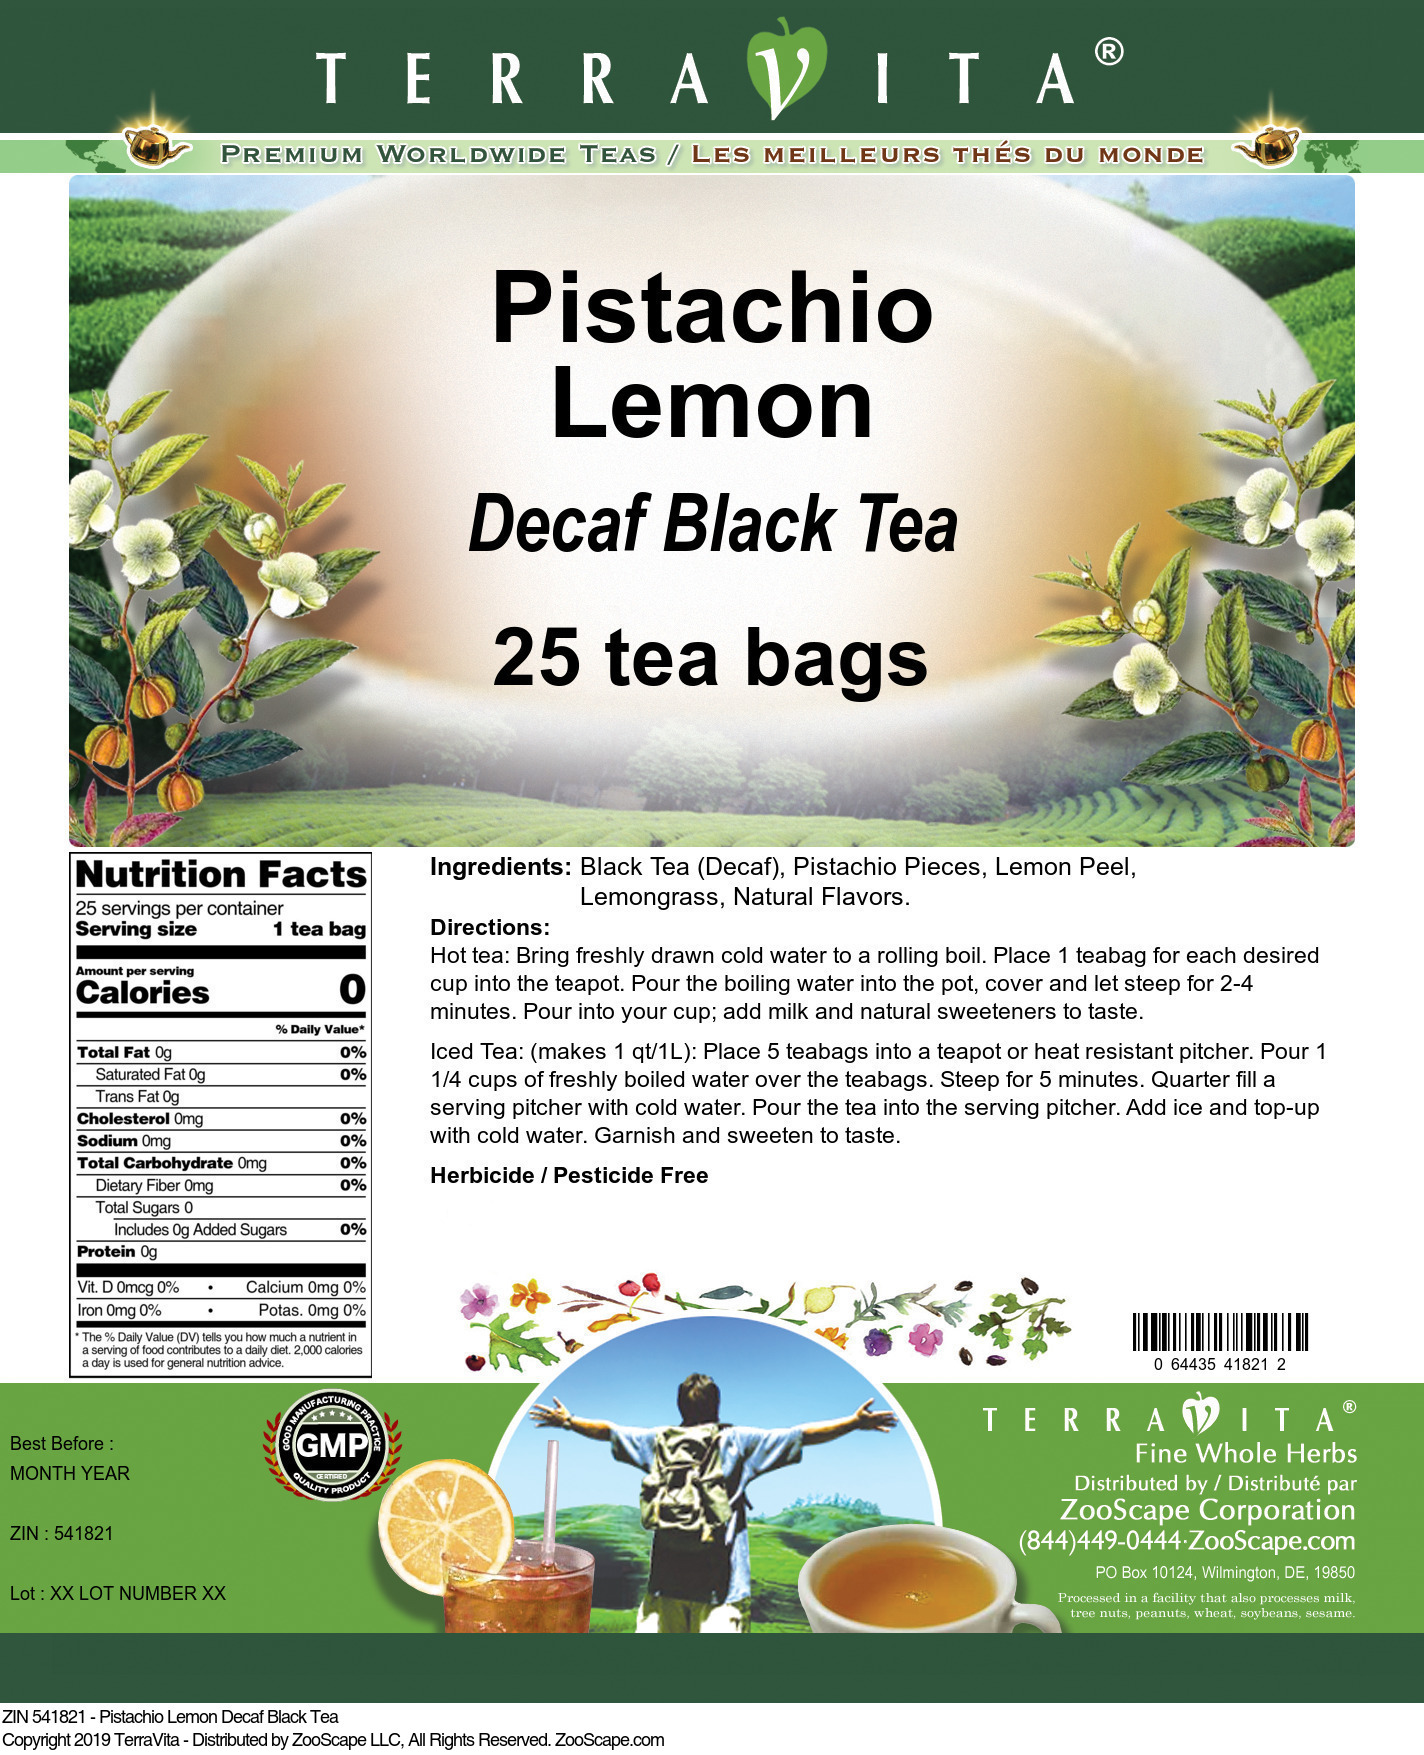 Pistachio Lemon Decaf Black Tea - Label